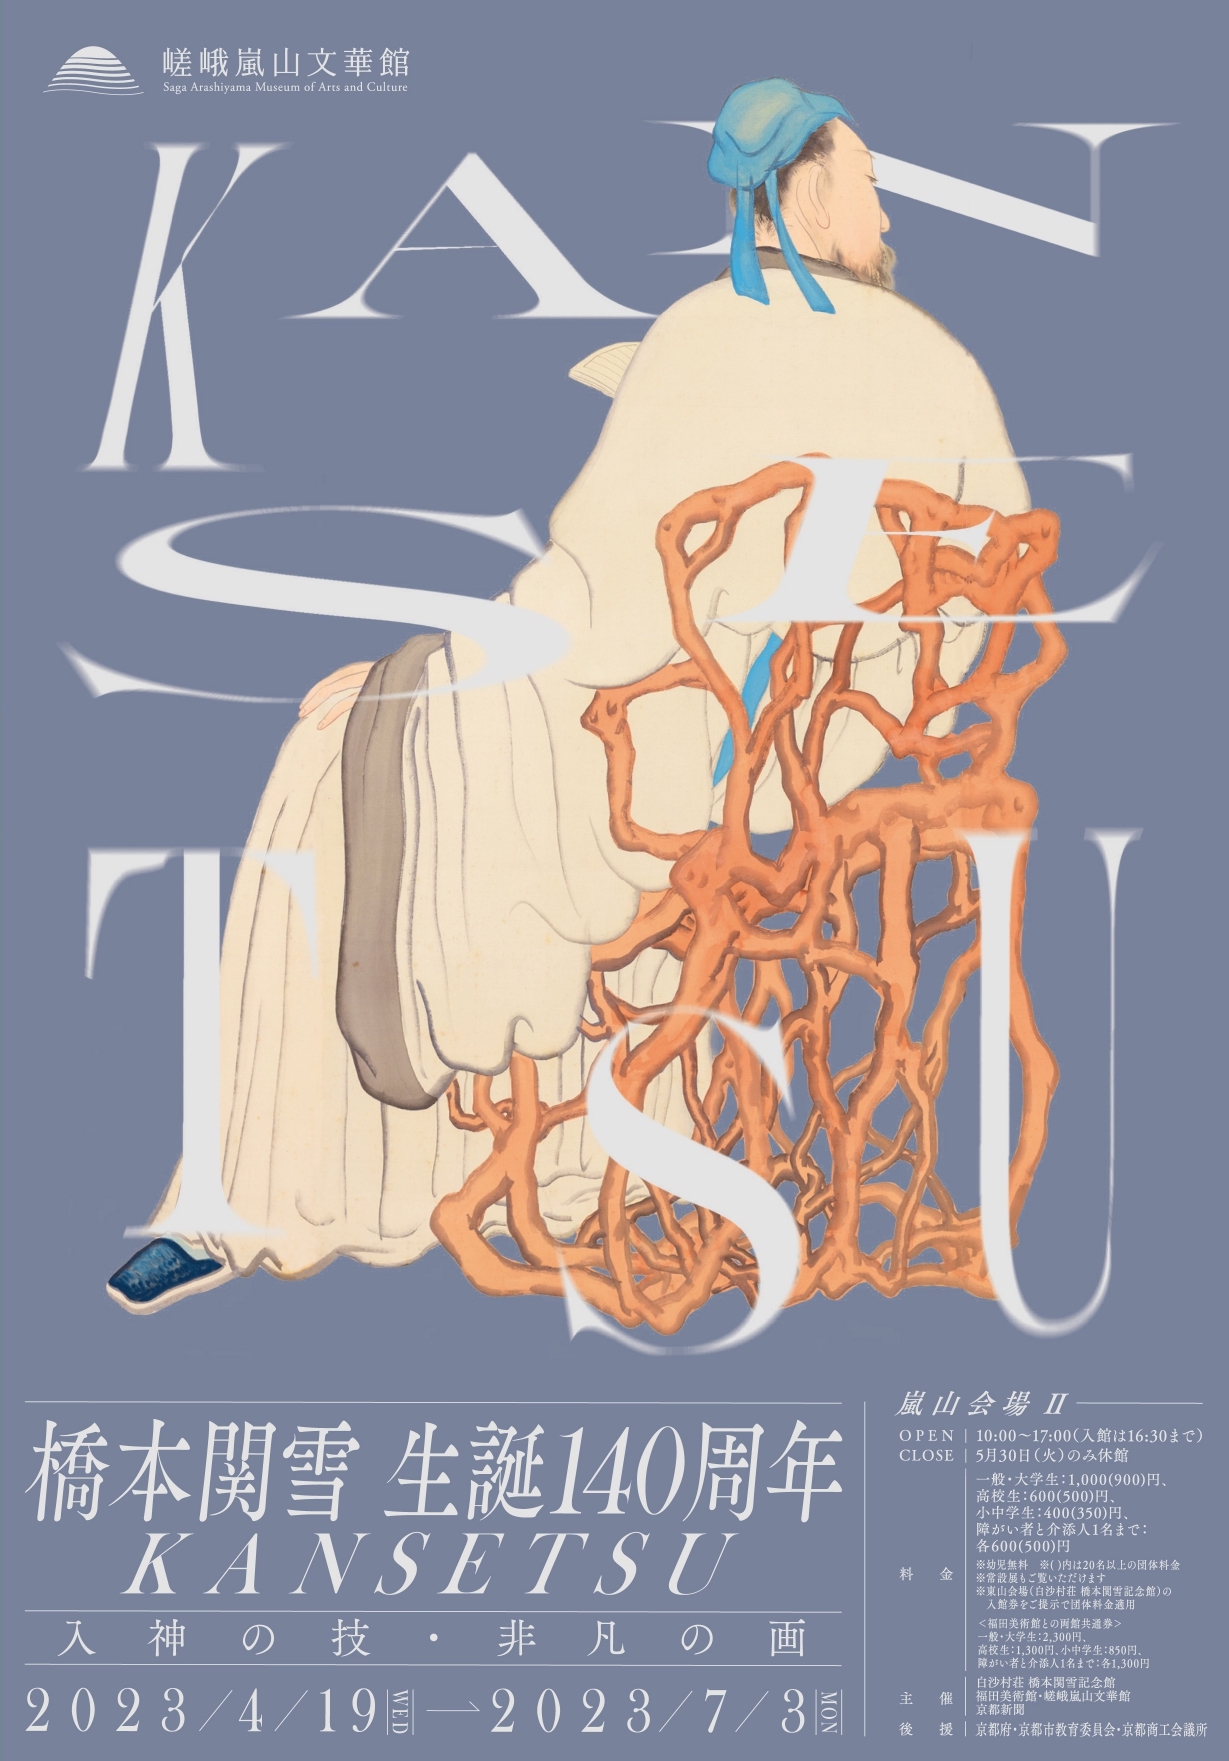 橋本関雪 生誕140周年 KANSETSU - 入神の技・非凡の画 - 」 （嵯峨嵐山 